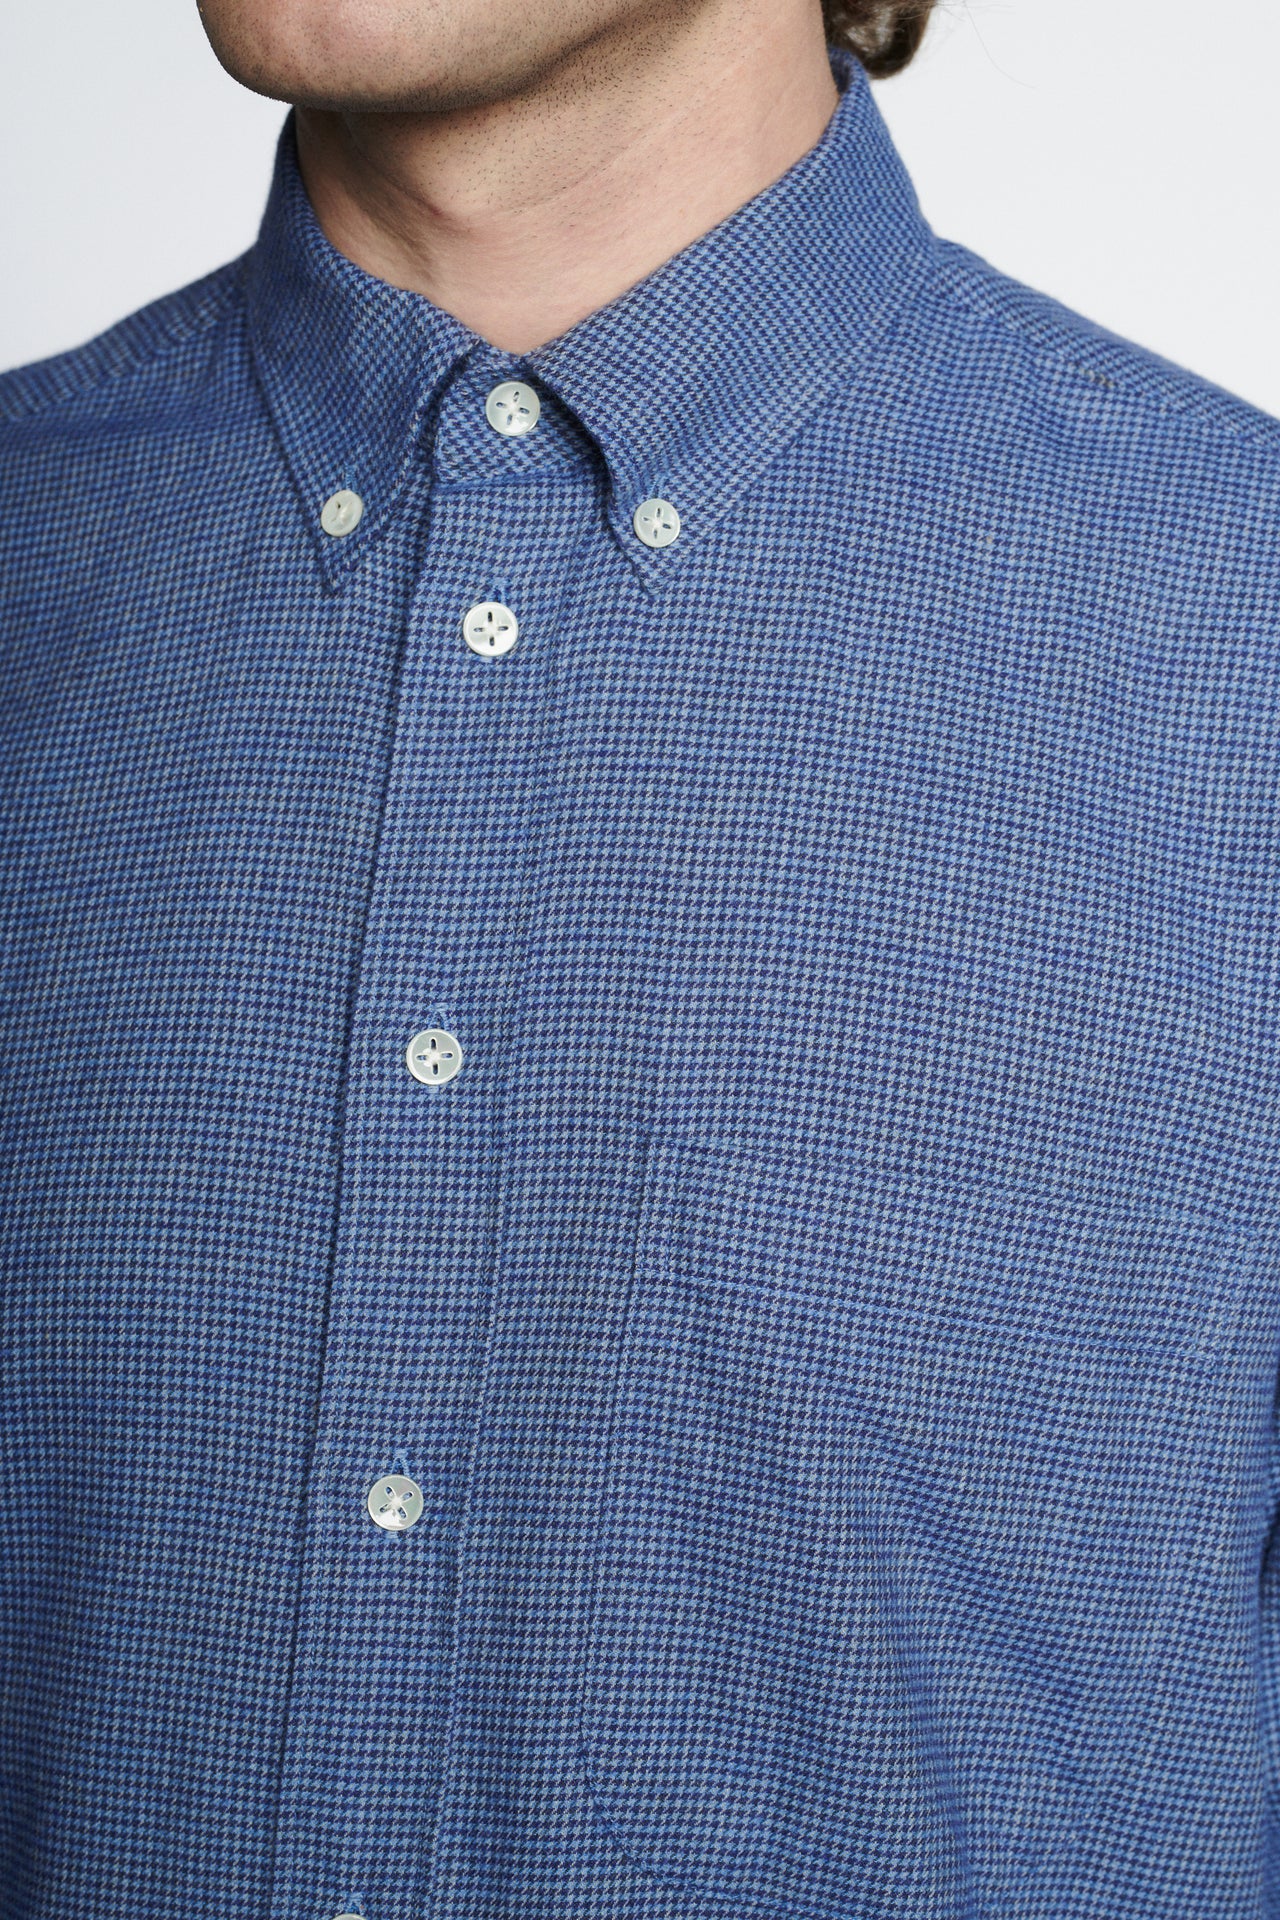 ミニチェックブルーのボタンダウンシャツ イタリア製リサイクルコットン